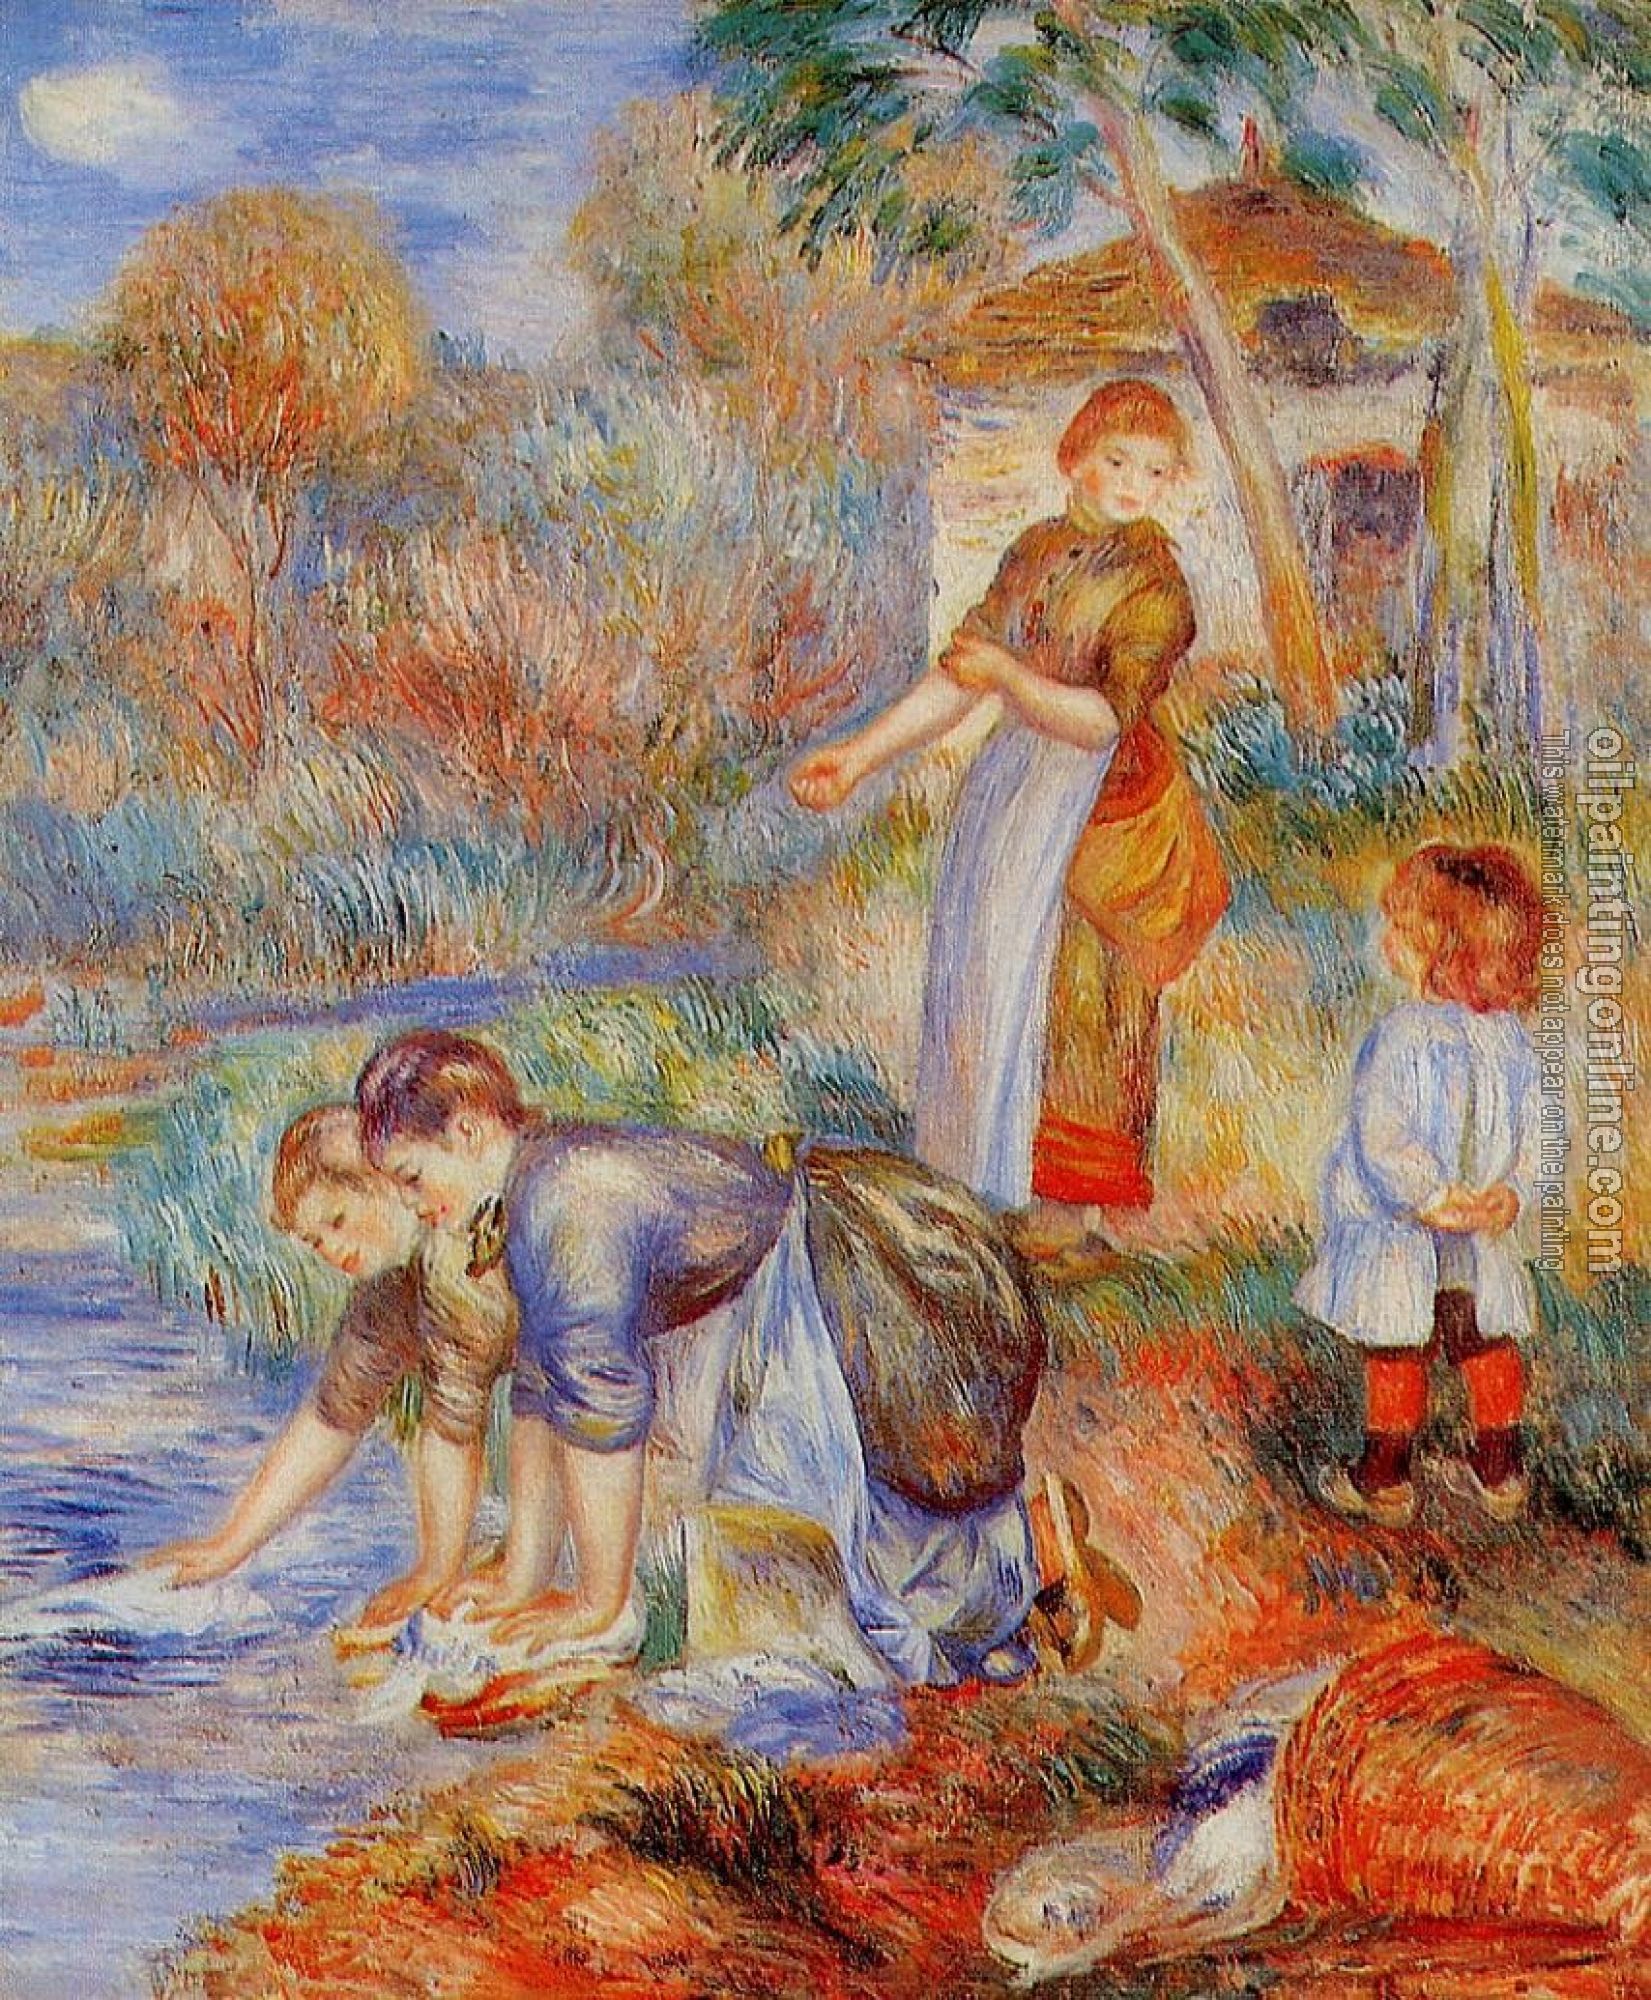 Renoir, Pierre Auguste - Laundresses